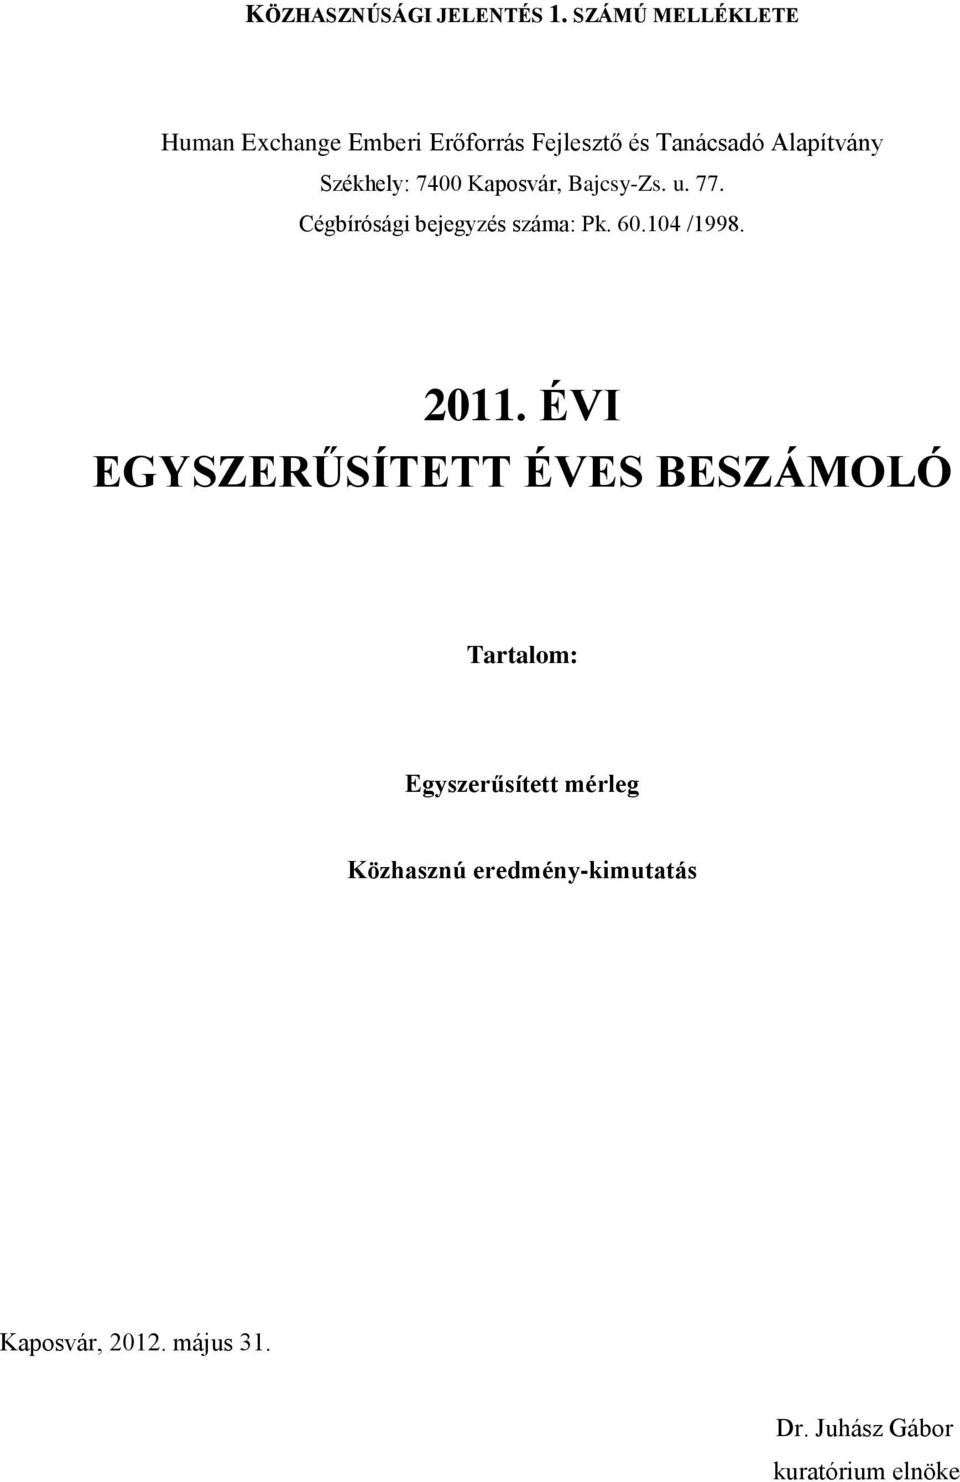 Alapítvány Székhely: 7400 Kaposvár, Bajcsy-Zs. u. 77.